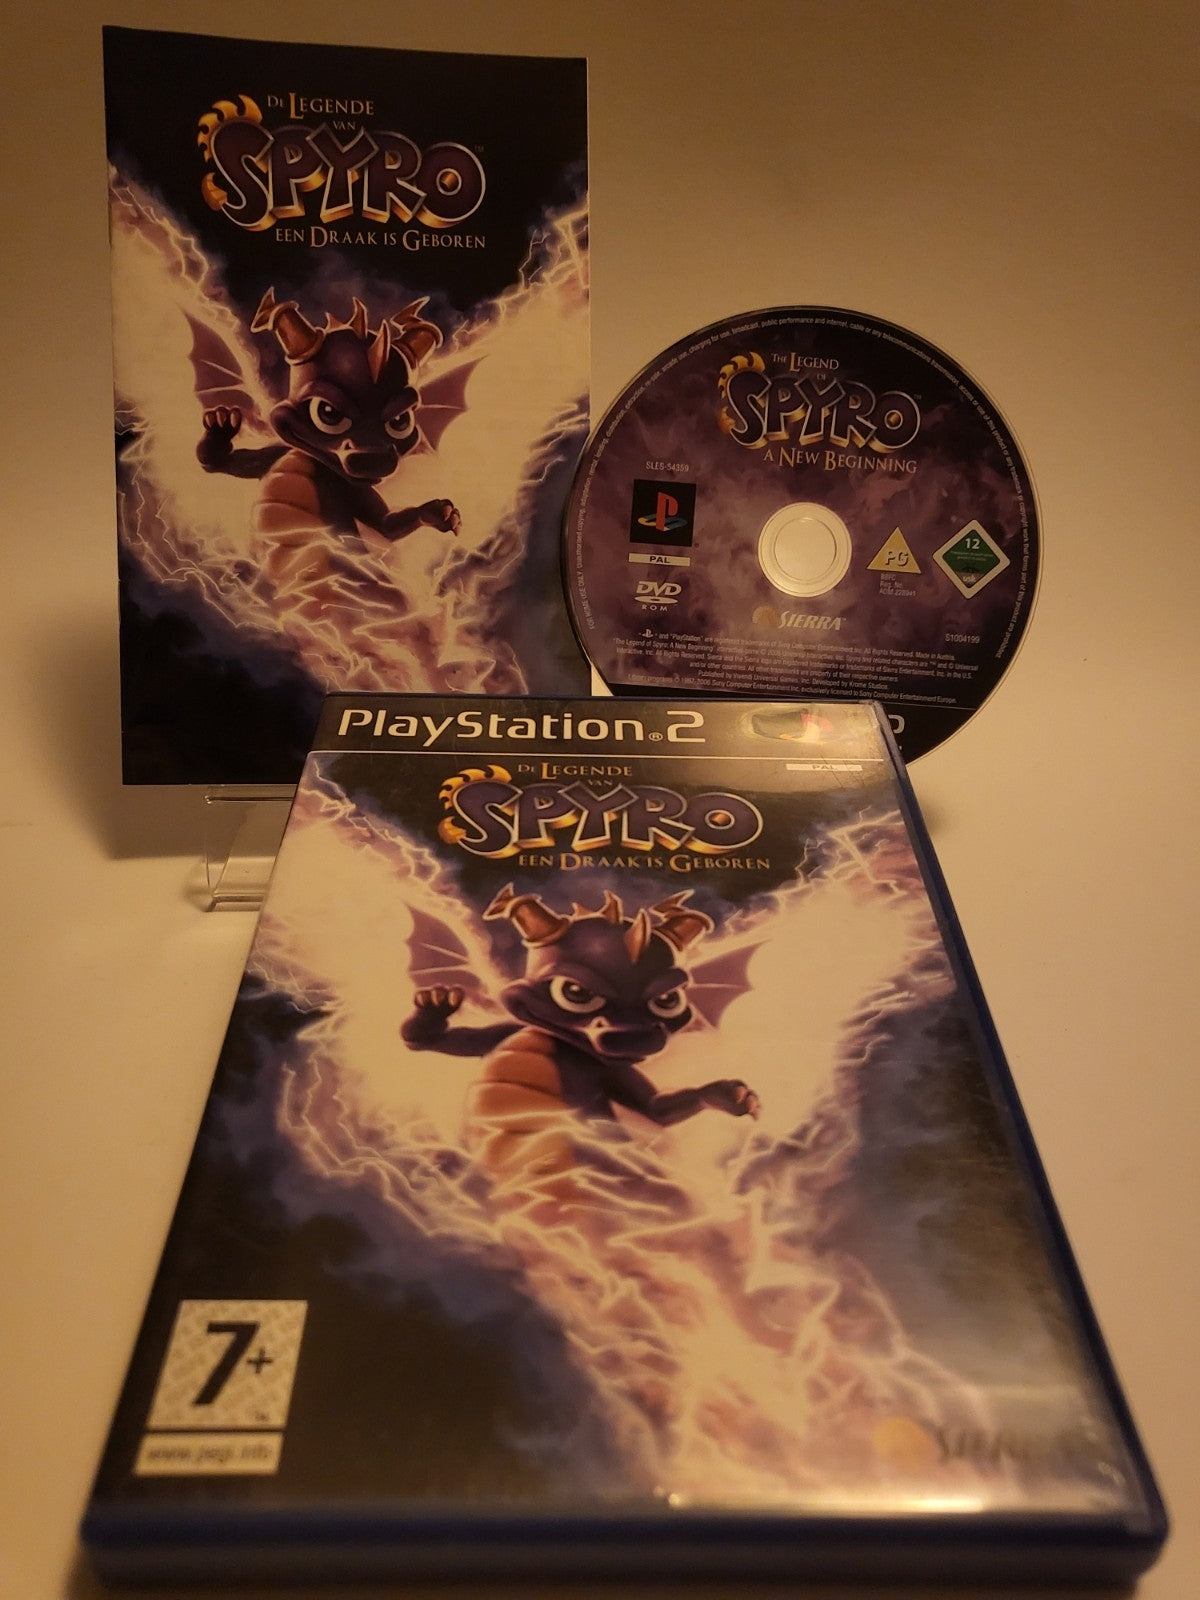 De Legende van Spyro een Draak is Geboren Playstation 2